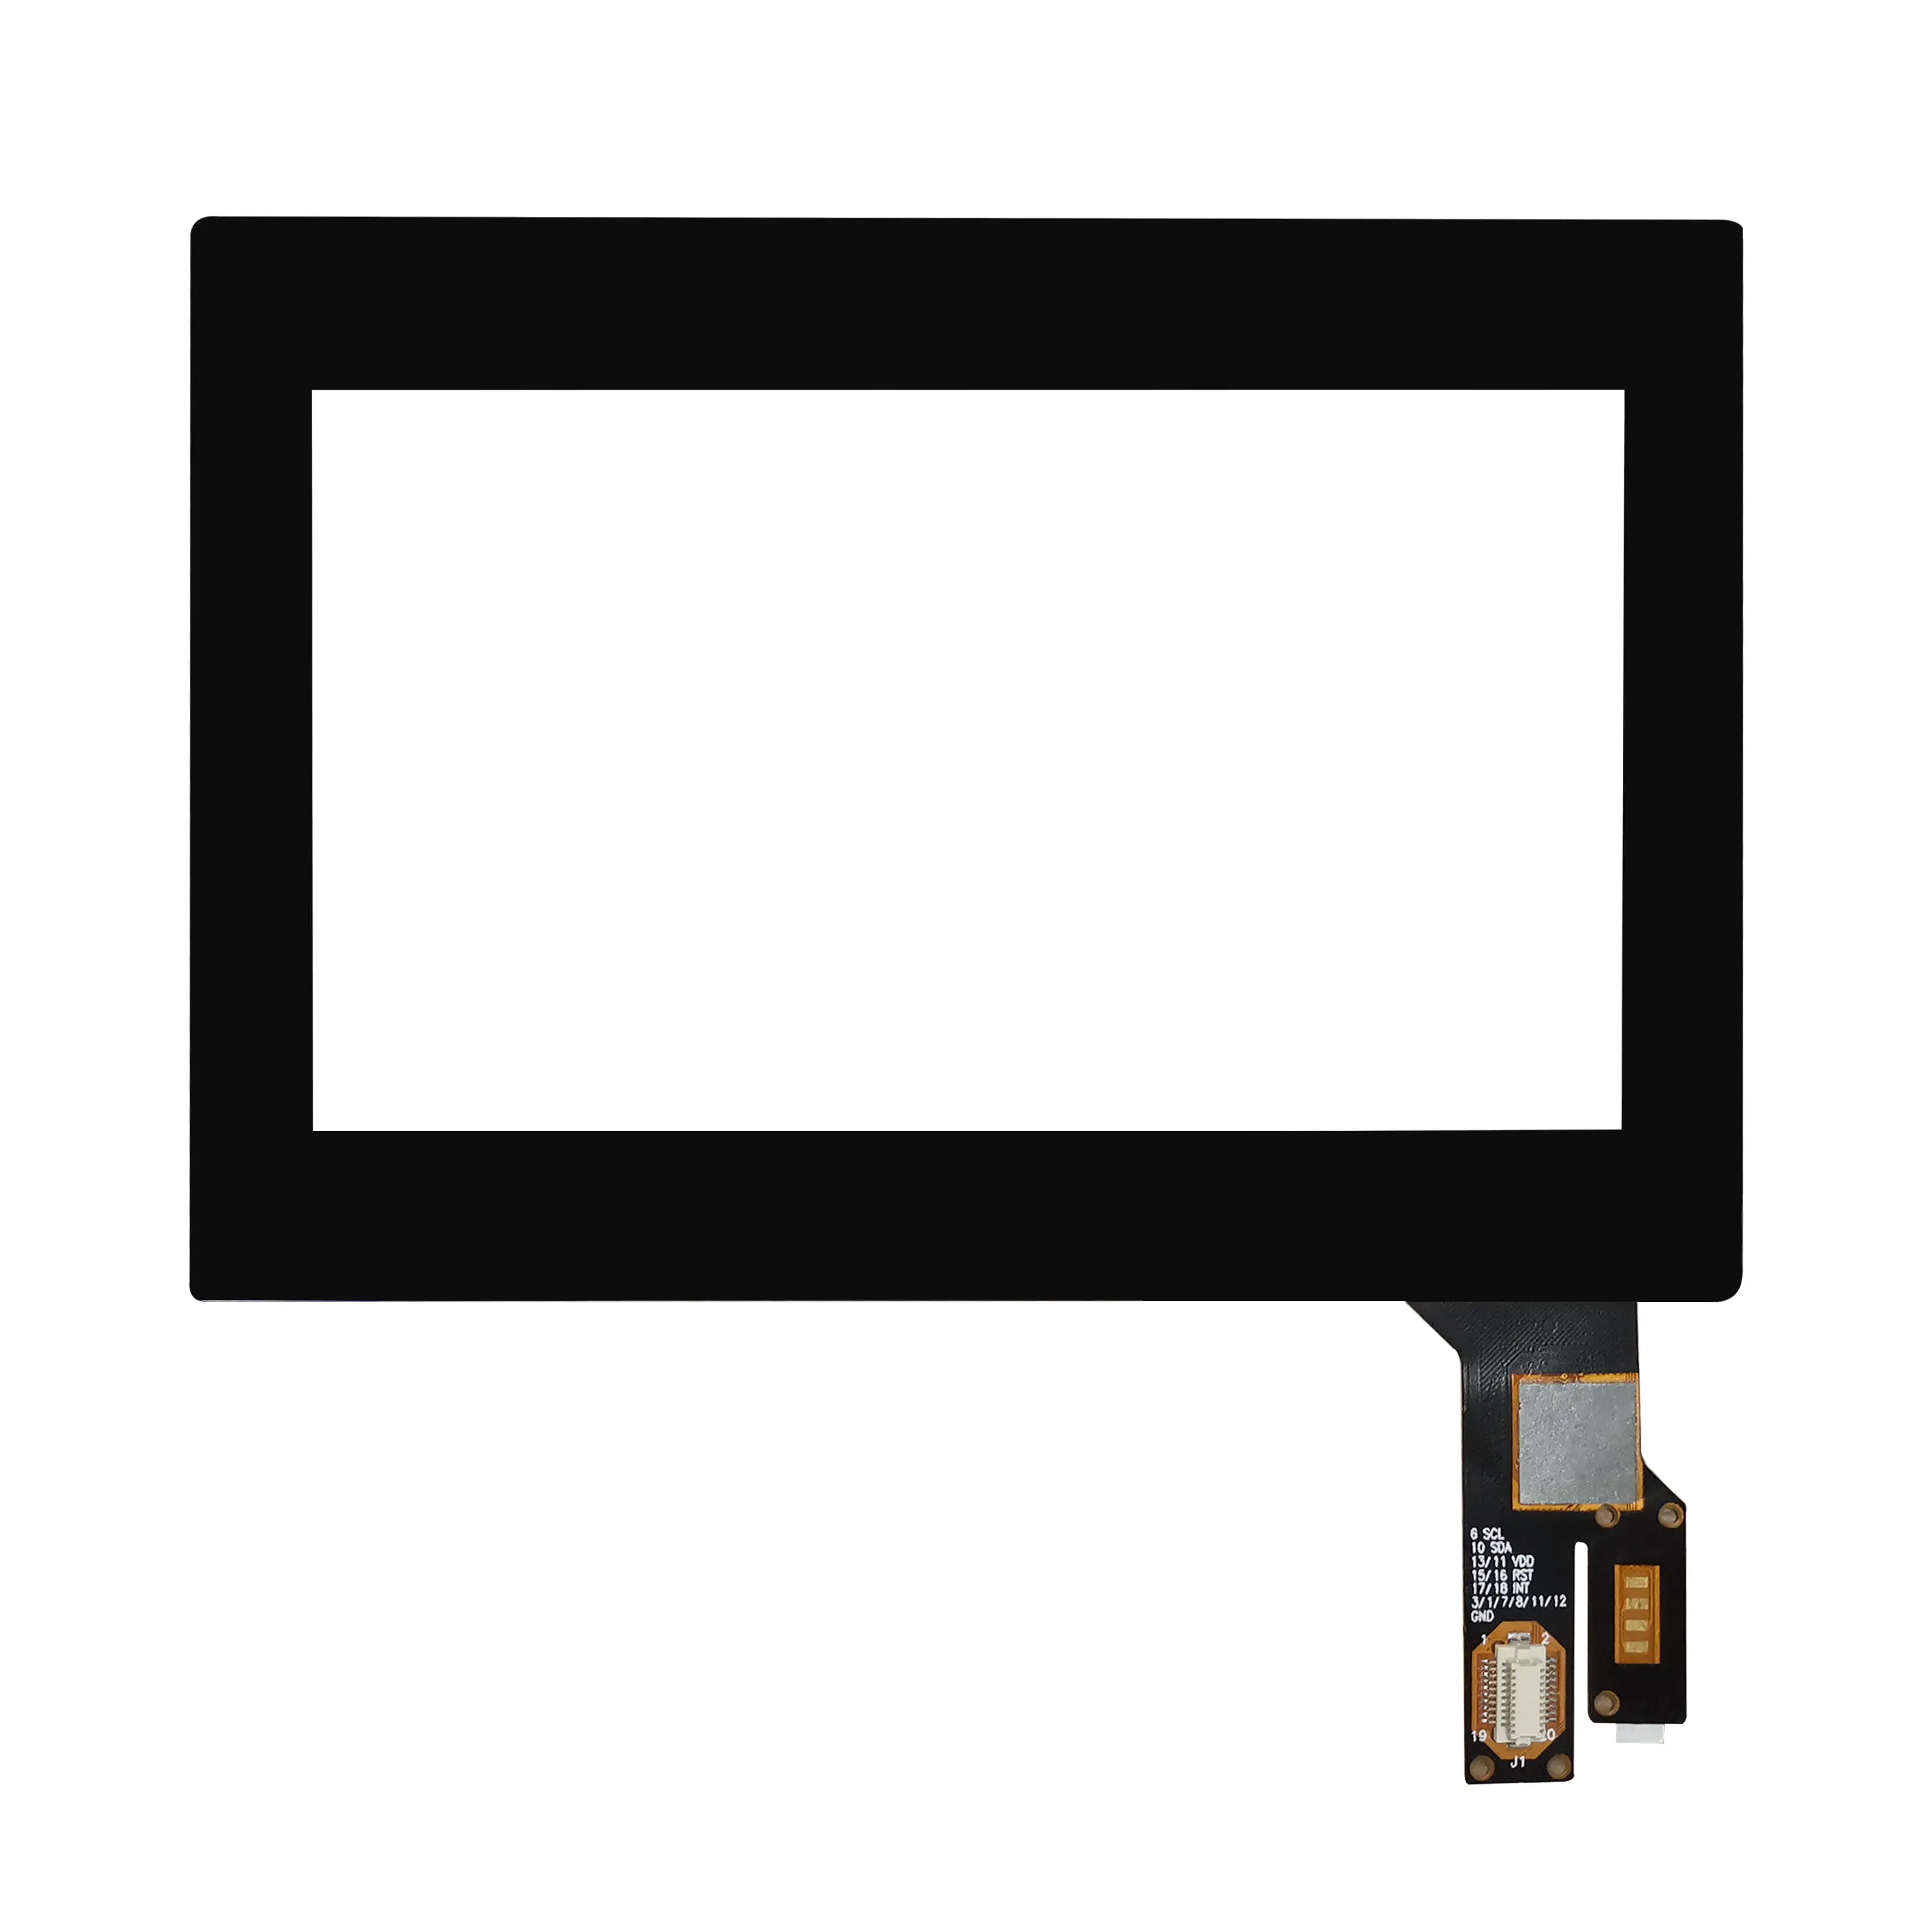 Superposiciones de panel de pantalla táctil capacitiva multitáctil de 4,3 pulgadas personalizadas de tamaño pequeño con Focaltech Goodix ILITEK